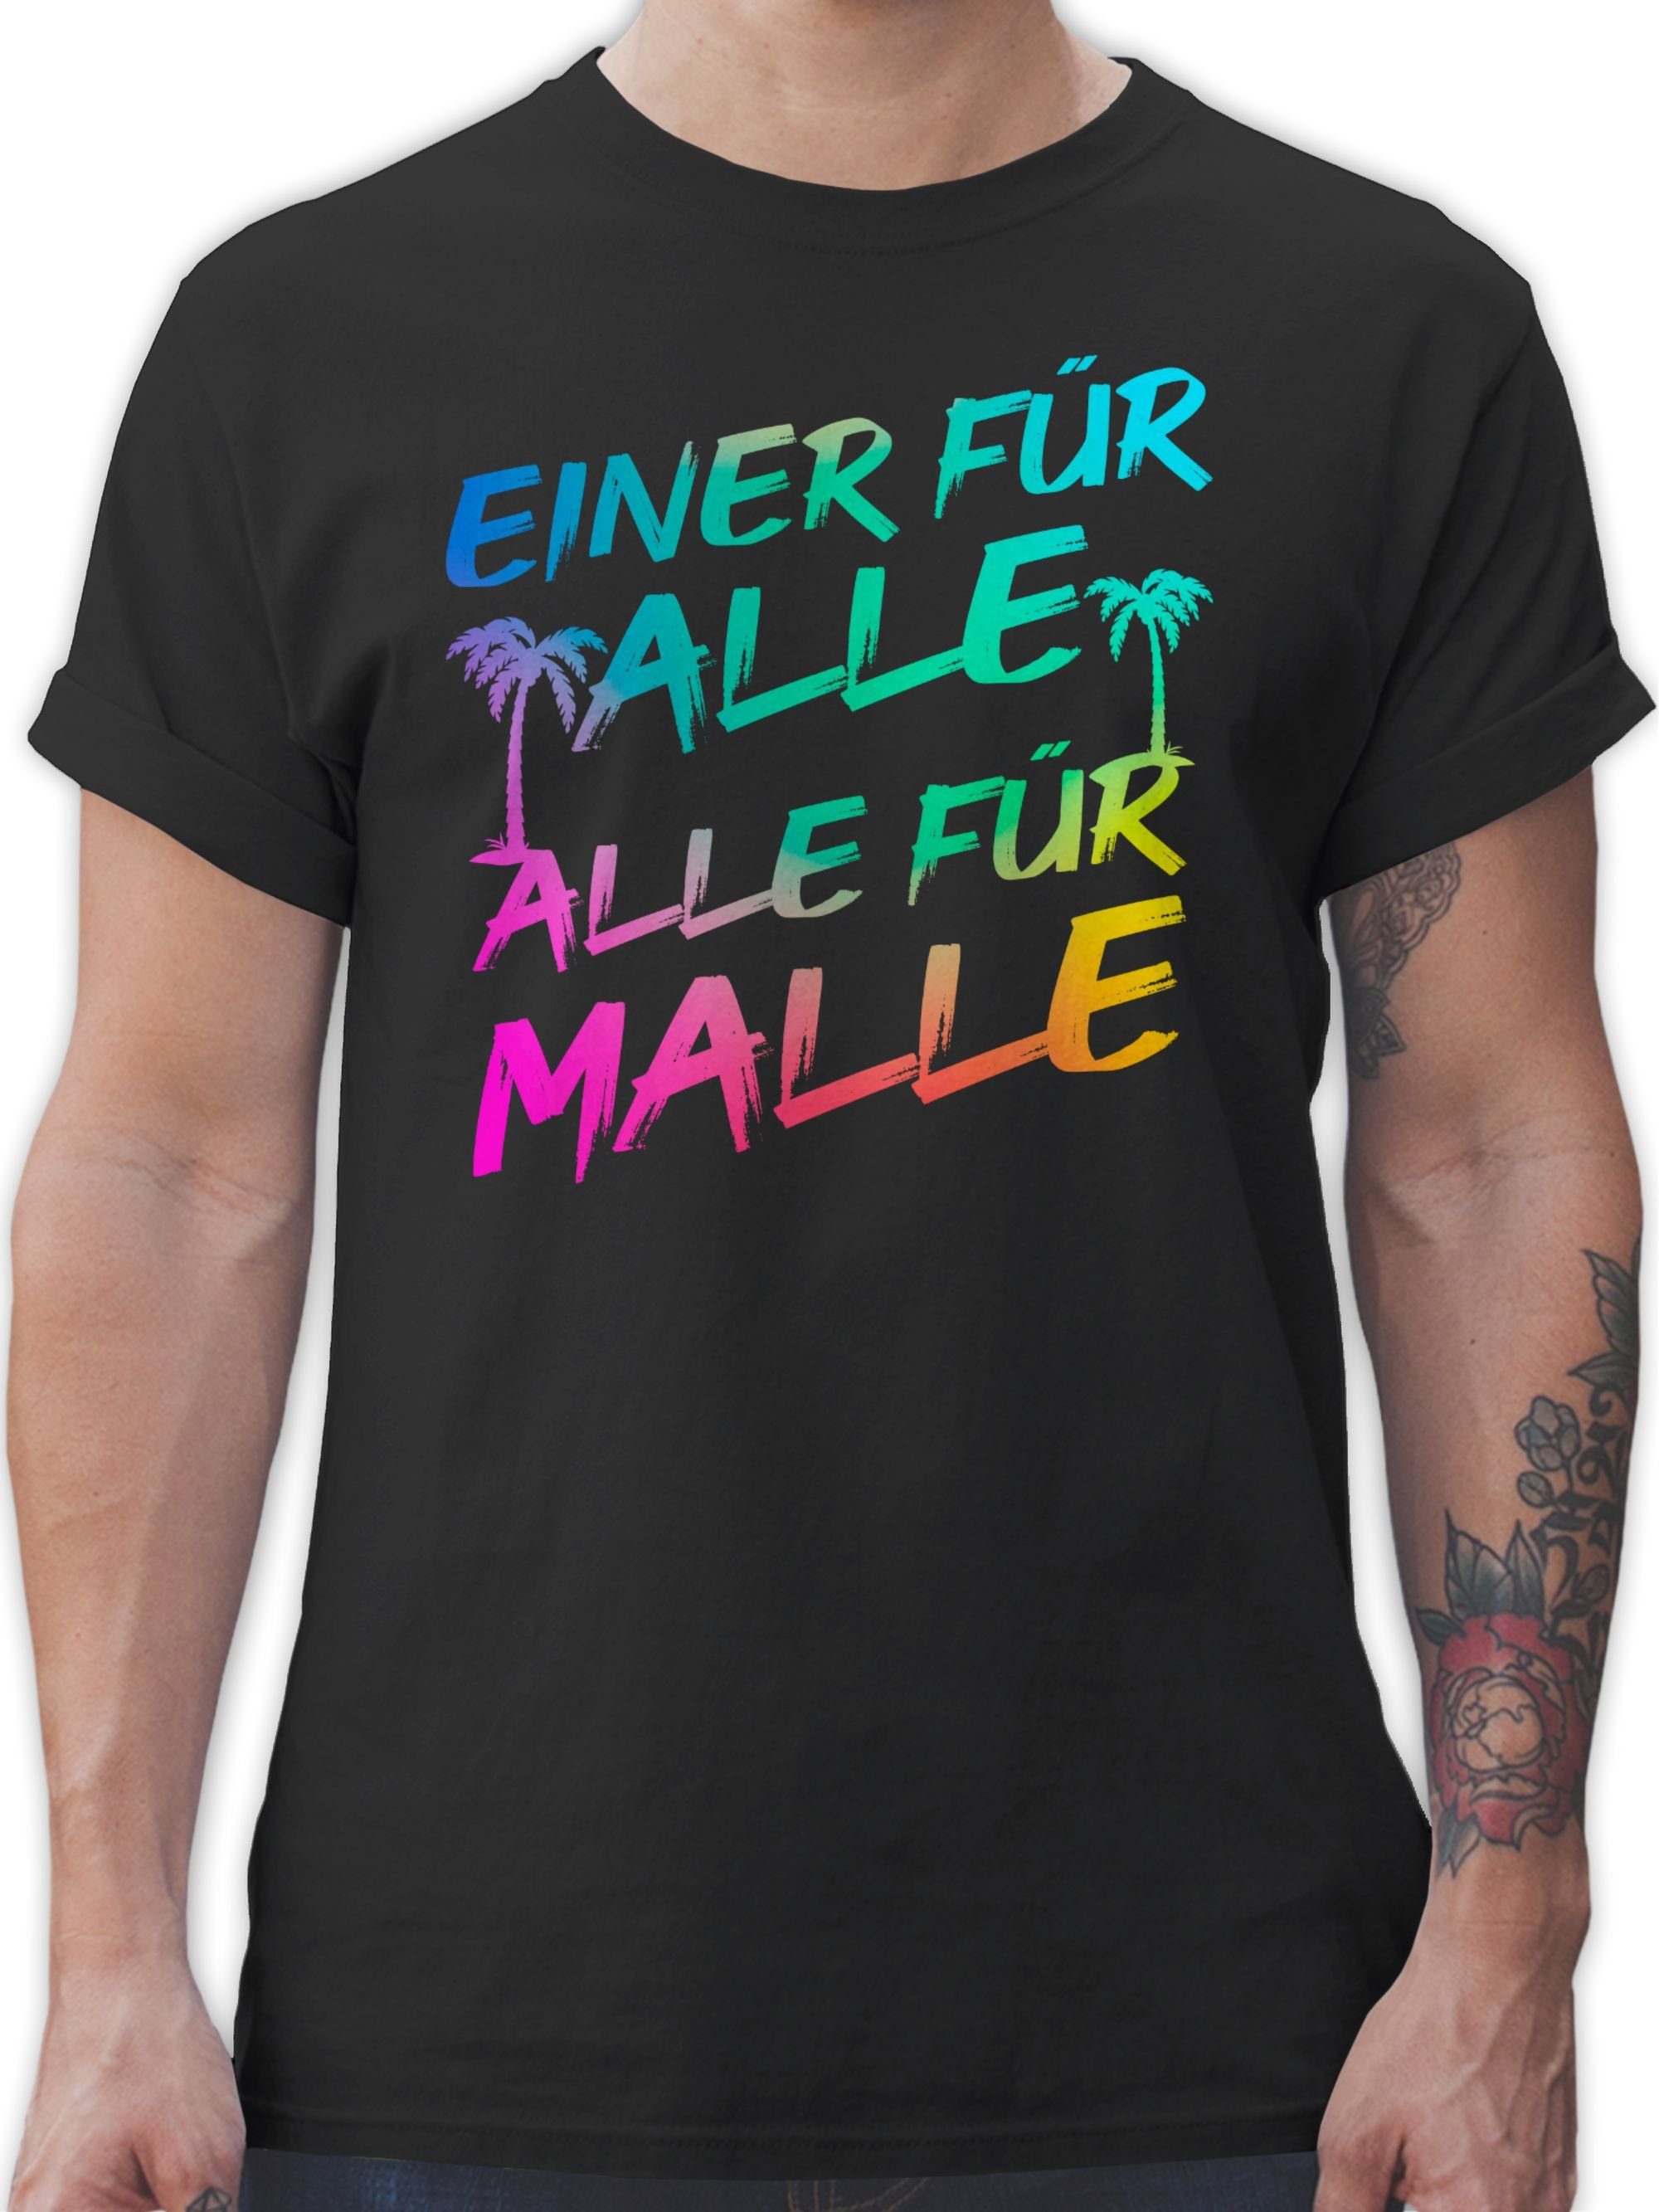 Shirtracer T-Shirt Malle für Alle - Einer für alle Alle für Malle Sommerurlaub Herren 01 Schwarz